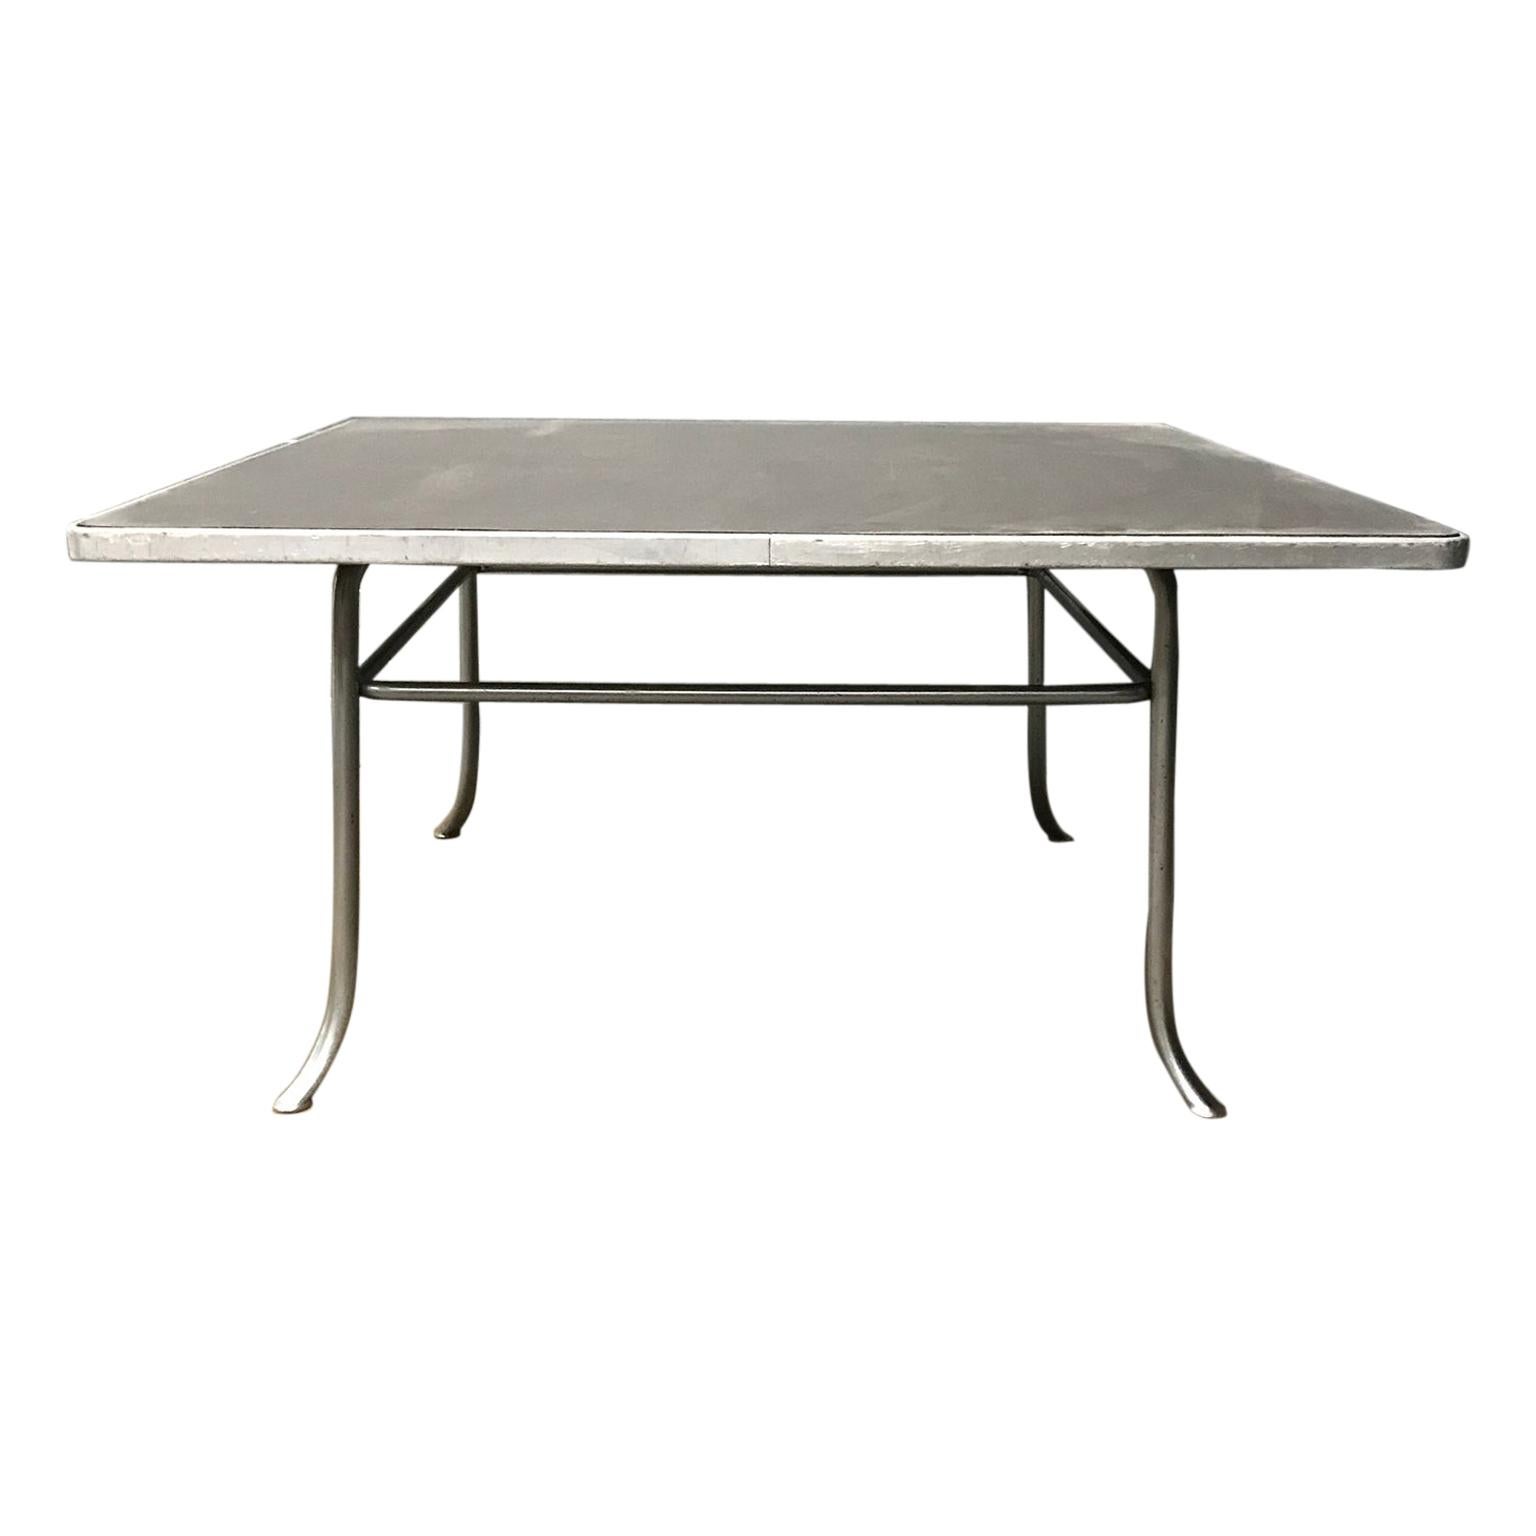 Très rare table basse carrée grise Gispen 412, pièce de musée, datant d'environ 1930